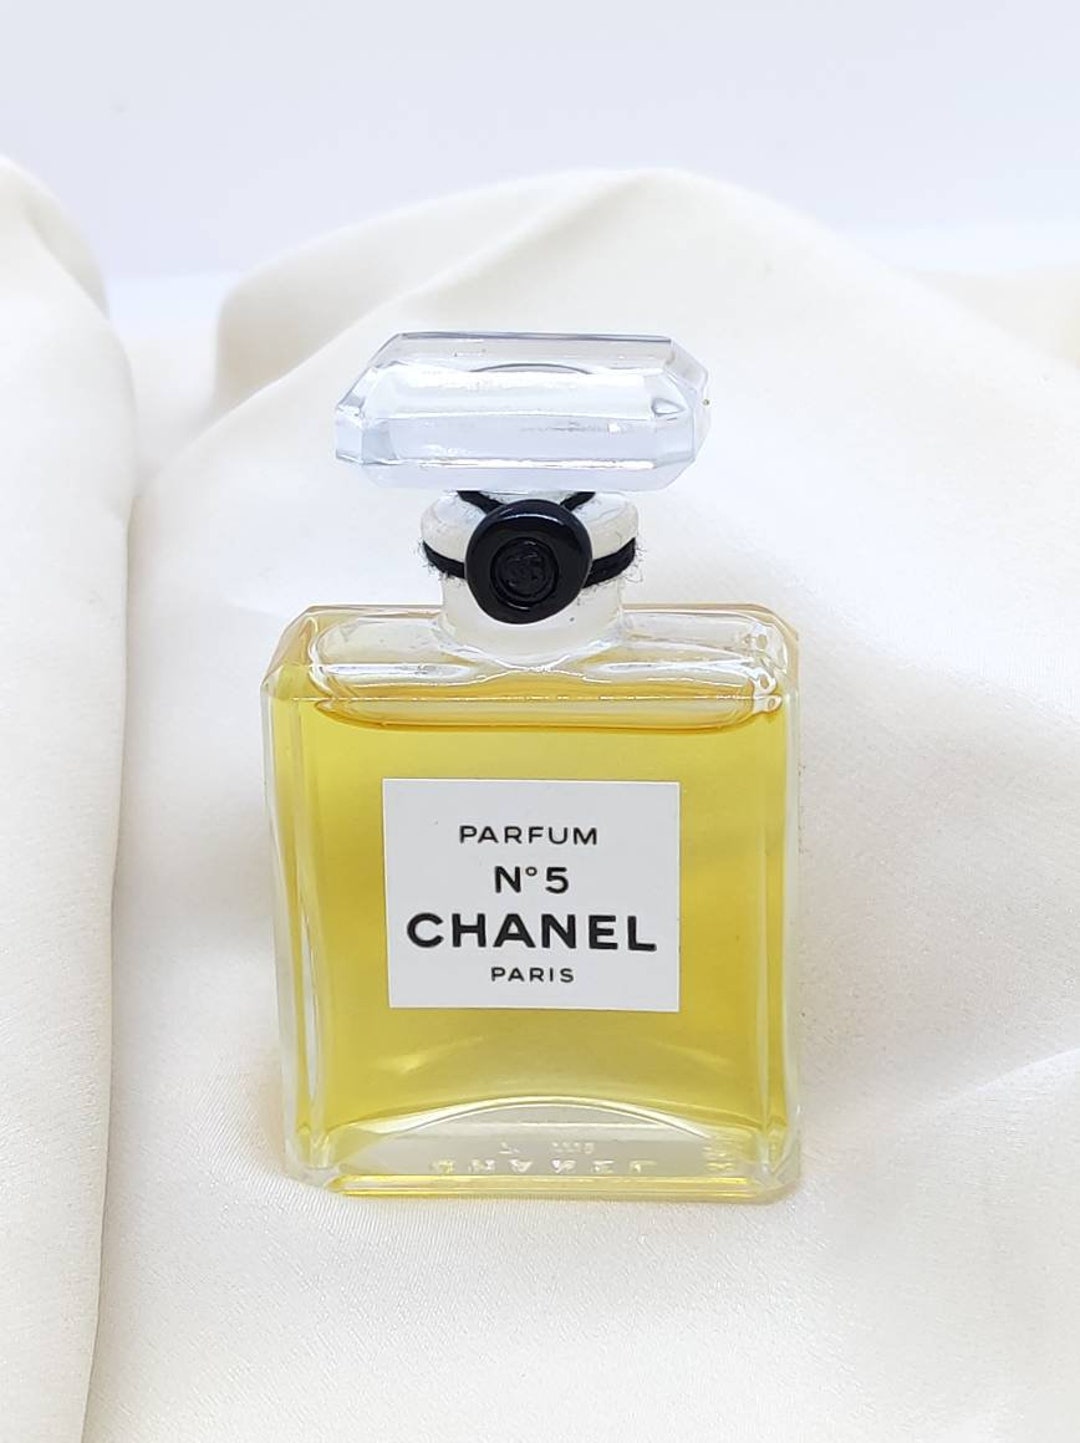 Chanel No5 pure perfume extrait sealed 7 ml Vintage Perfume Nr5